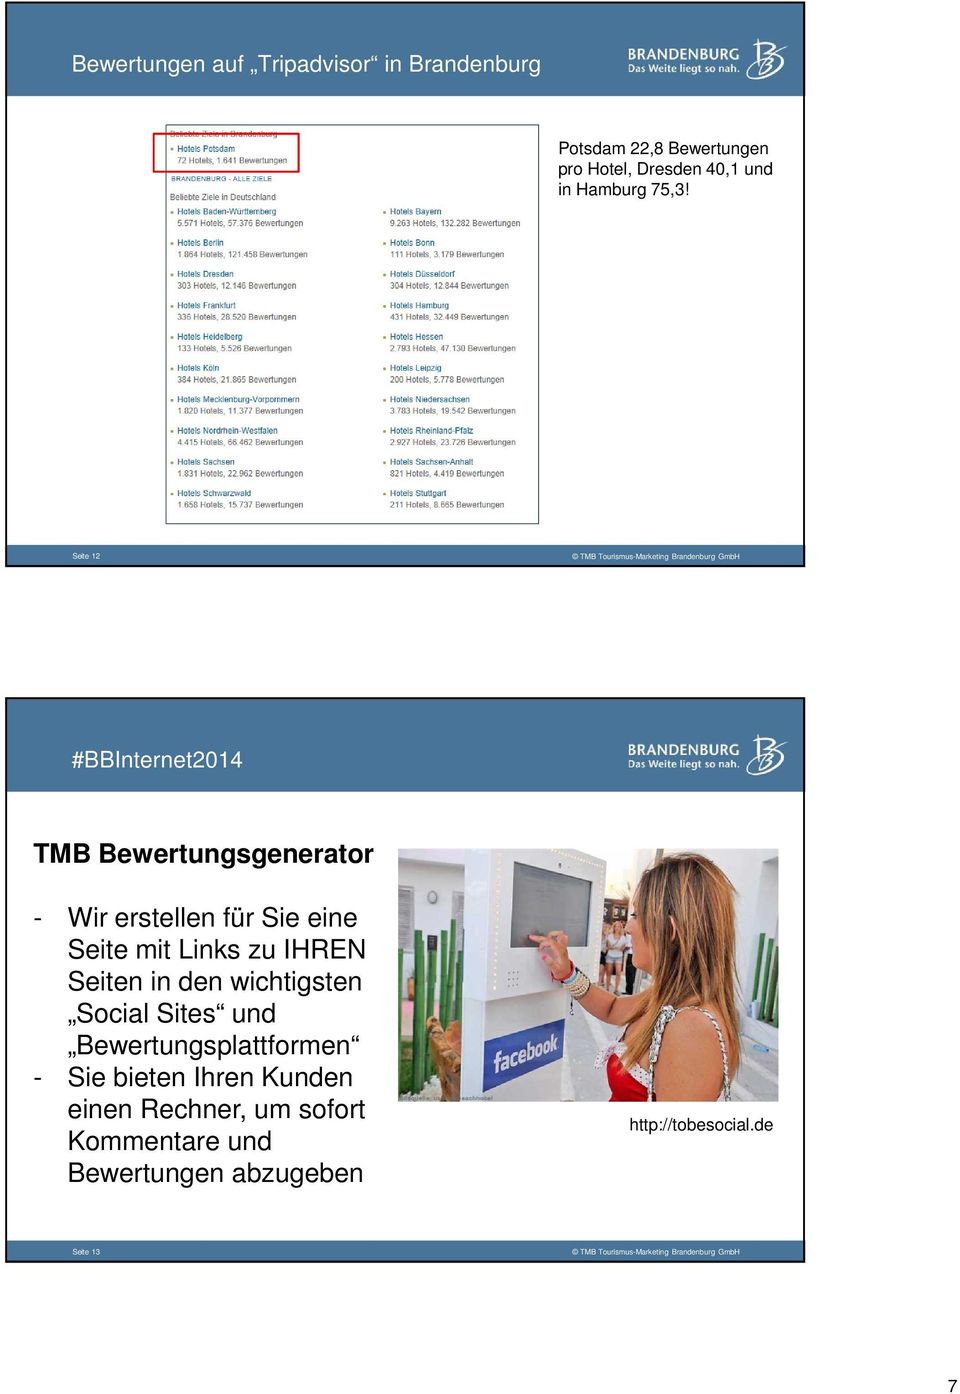 Seite 12 #BBInternet2014 TMB Bewertungsgenerator - Wir erstellen für Sie eine Seite mit Links zu